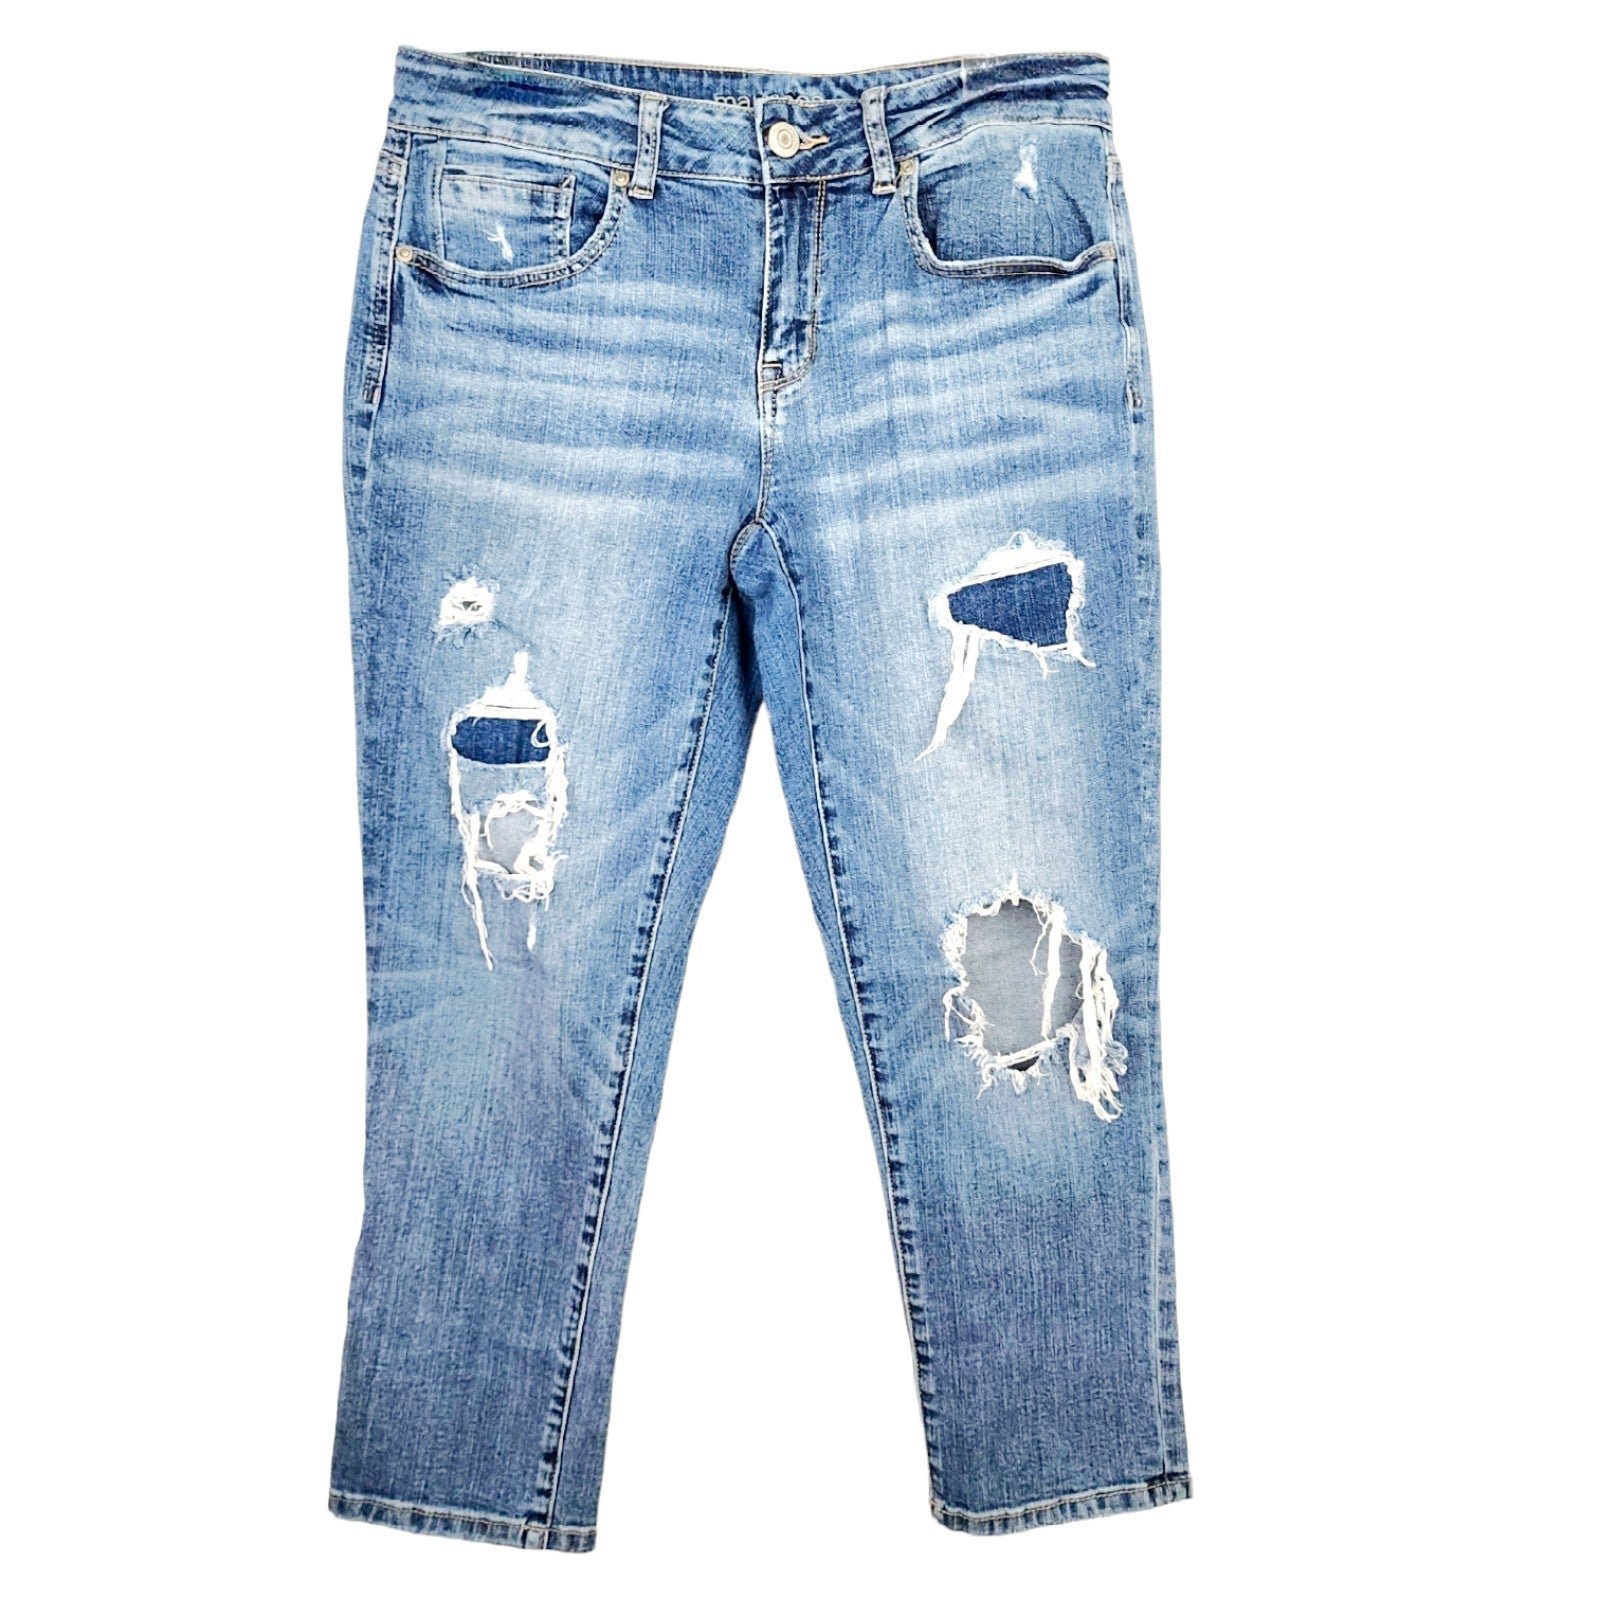 Elegant Maurices 7/8 Distressed Denim Capri Blue Jeans 